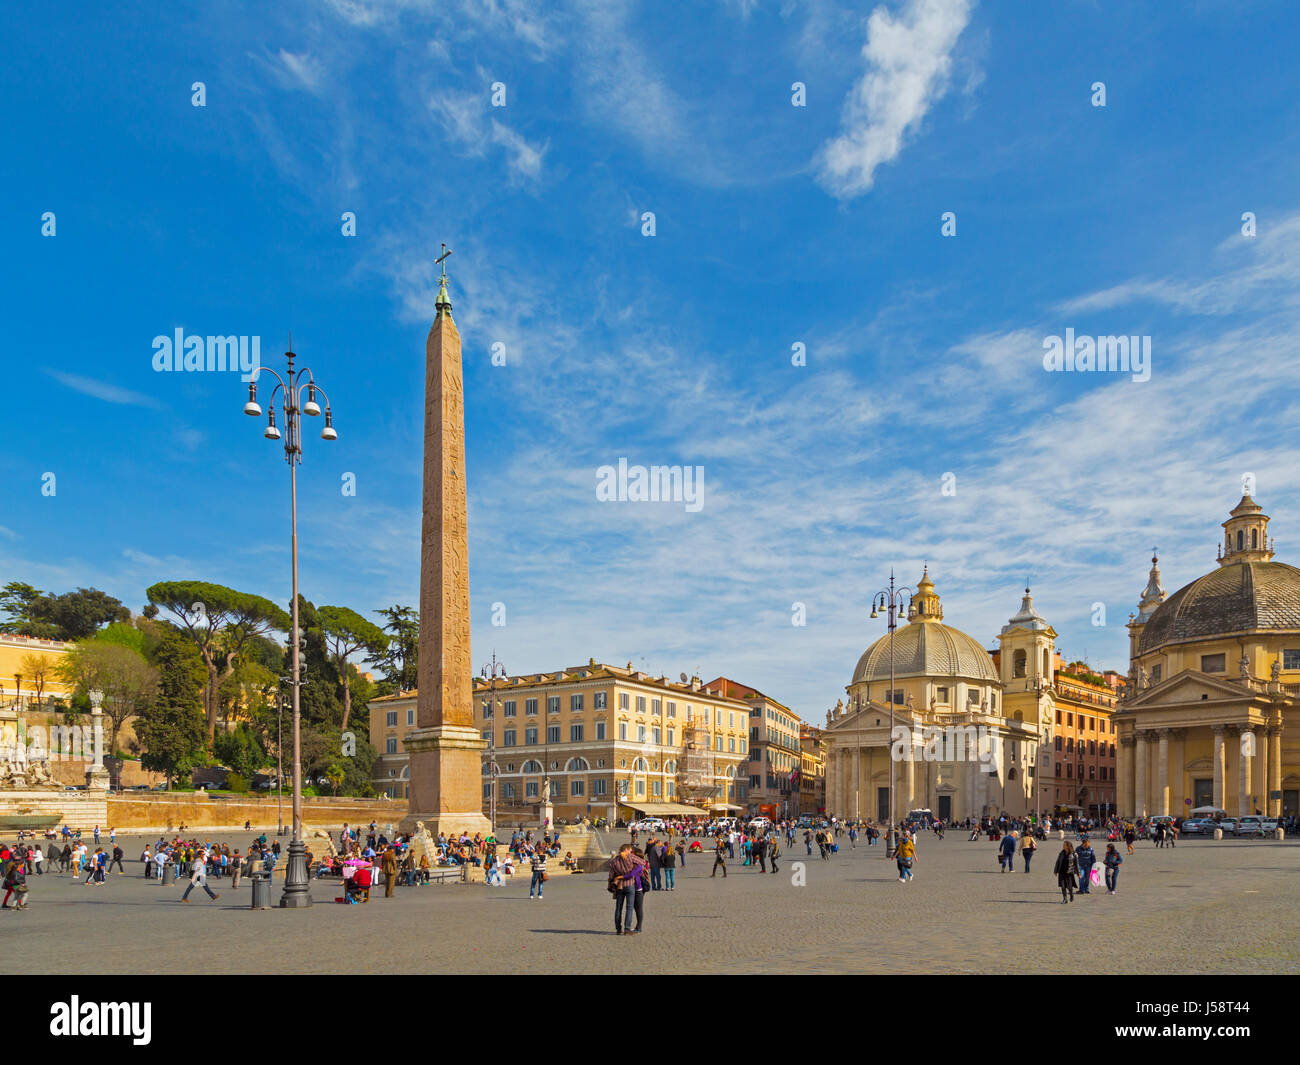 Roma, Italia. Piazza del Popolo. L'obelisco è stato portato da Heliopolis, Egitto durante il regno dell'Imperatore Augusto. Il centro storico di Ro Foto Stock